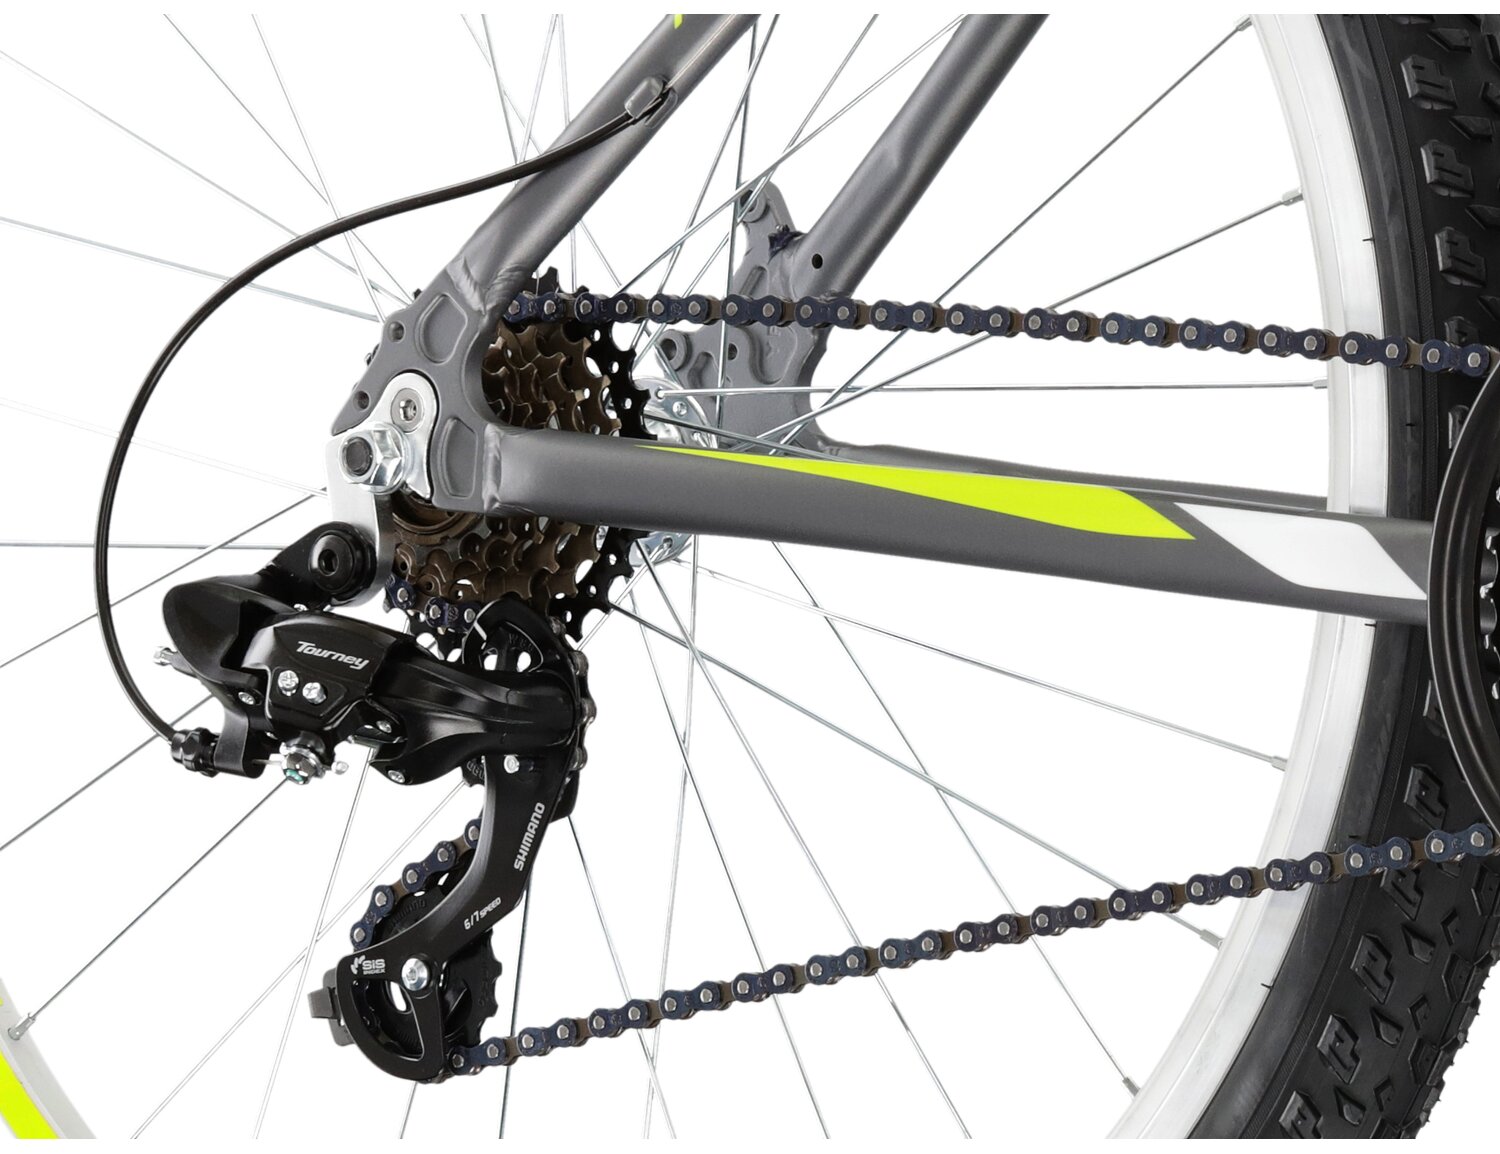  Tylna sześciobiegowa przerzutka Shimano Tourney TY300 oraz hamulce v-brake w rowerze górskim MTB KROSS Hexagon 